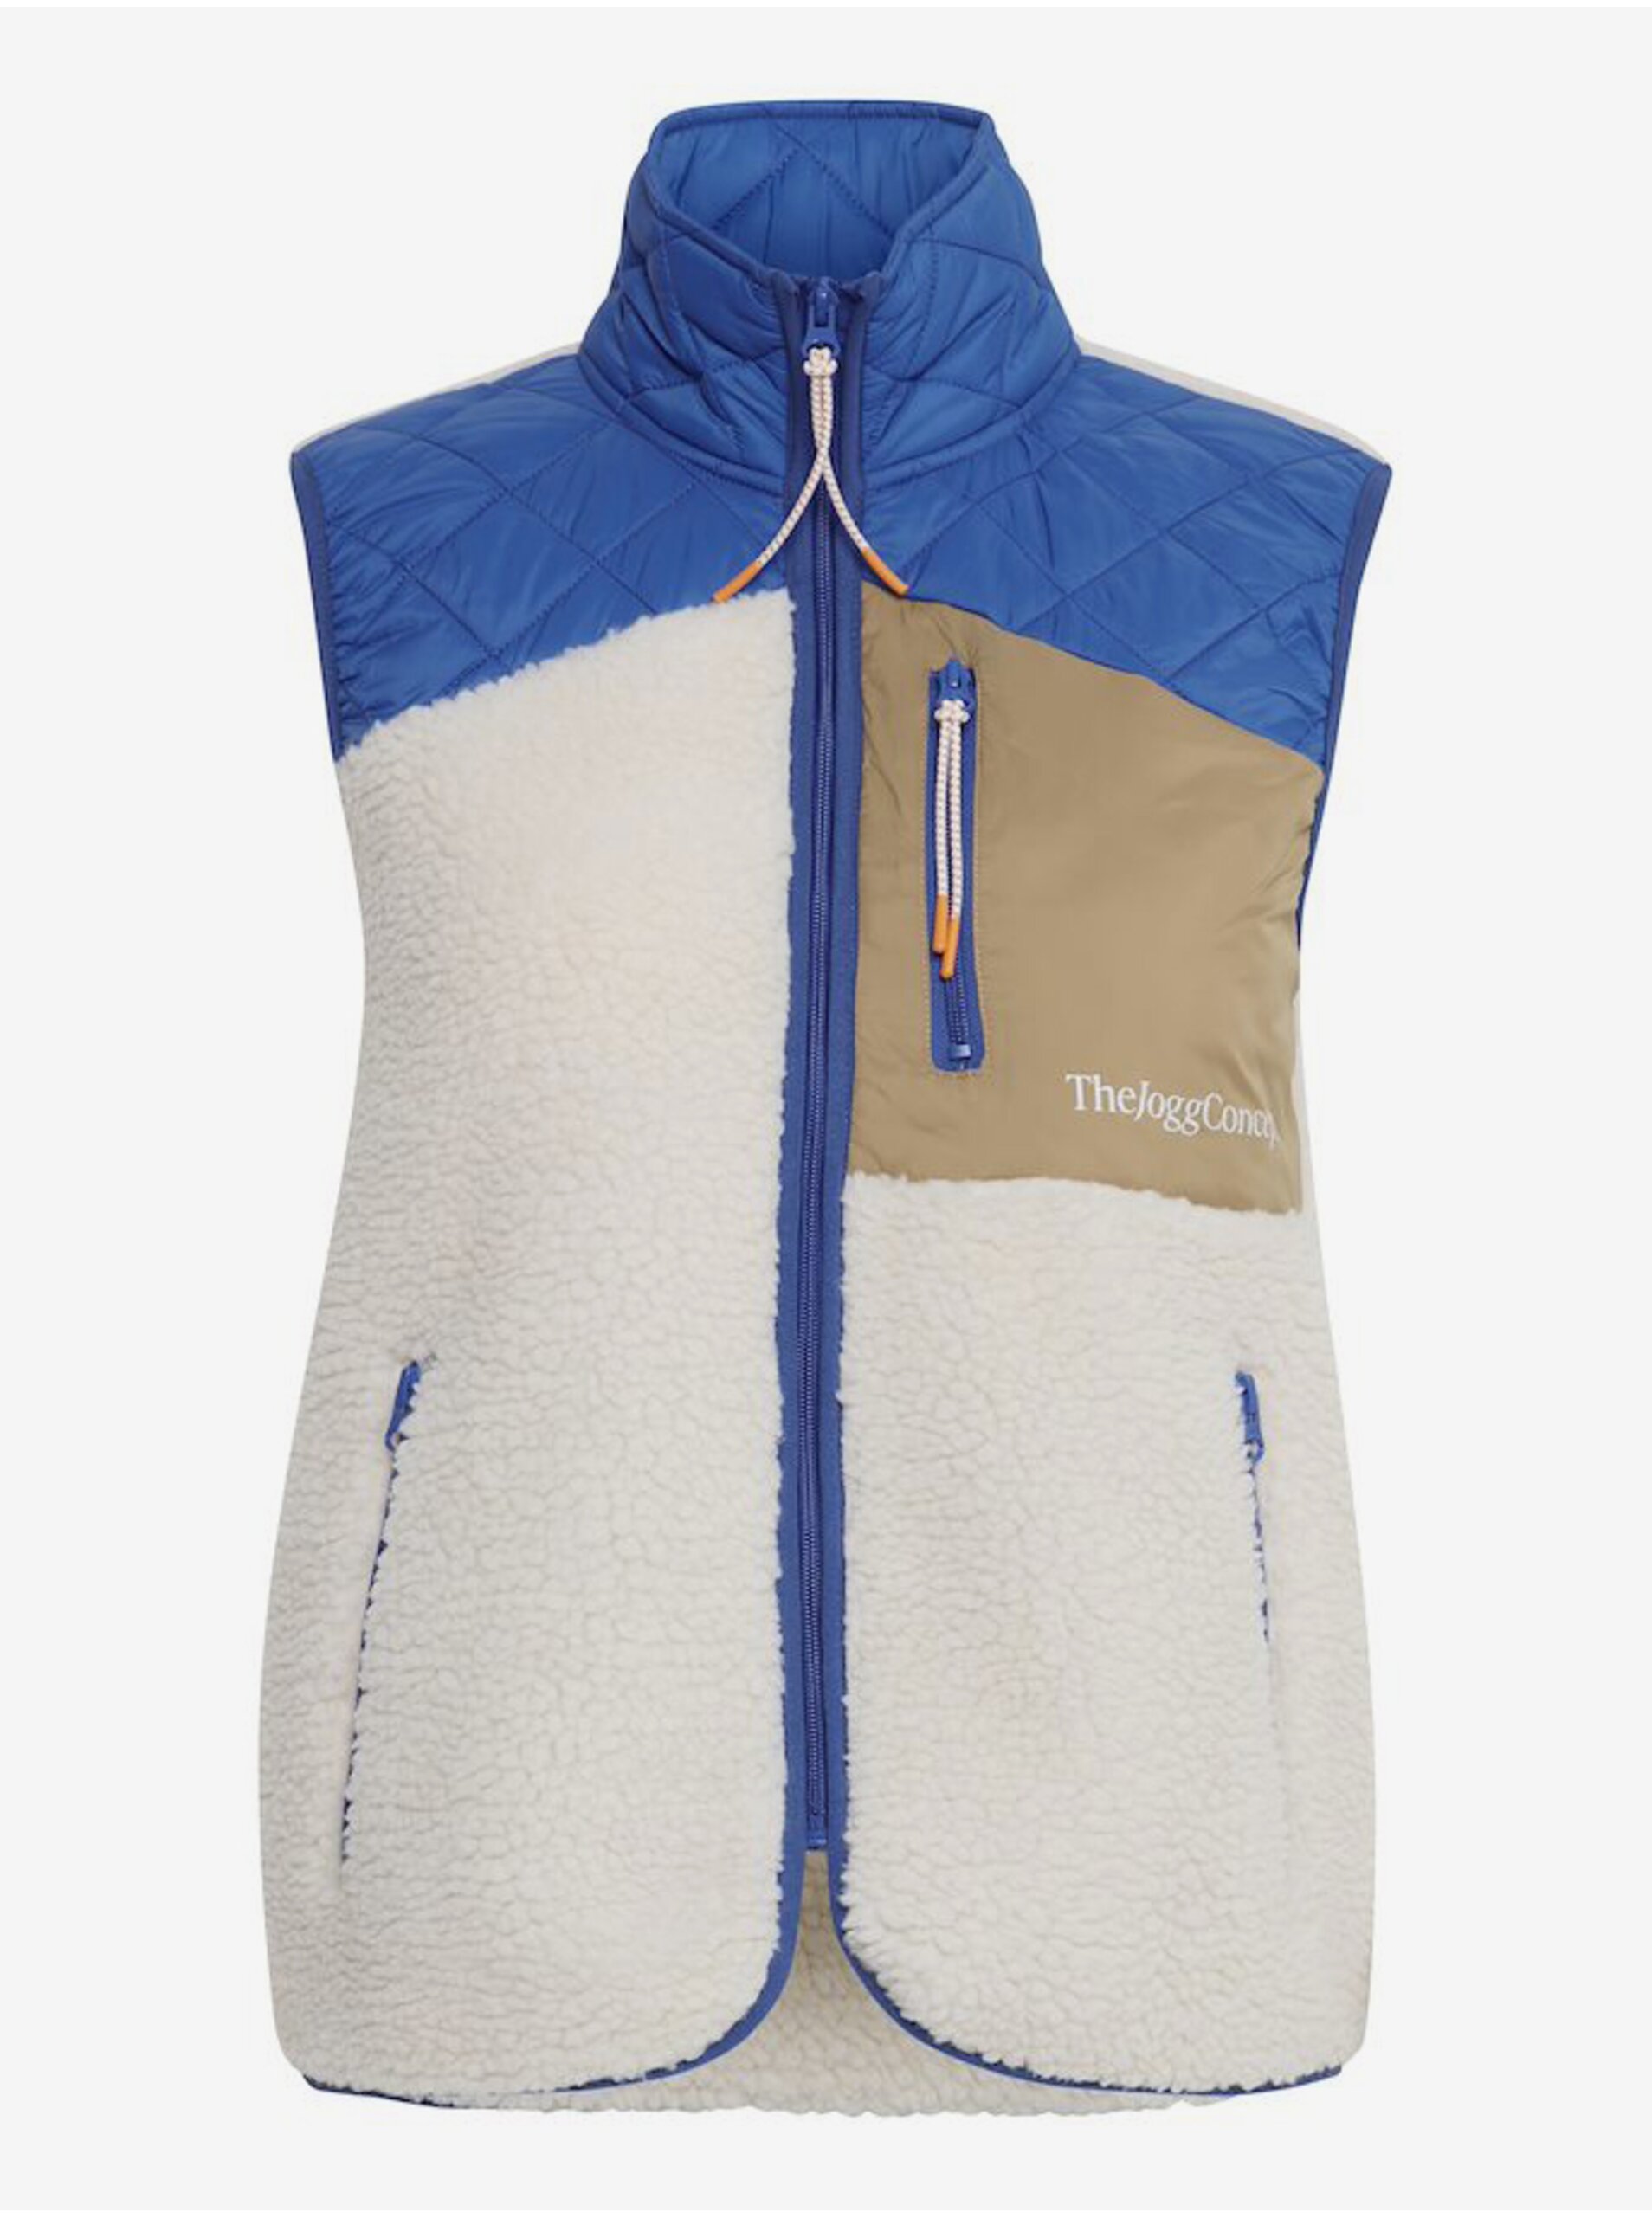 E-shop Modro-krémová dámská vesta s umělým kožíškem The Jogg Concept Berri